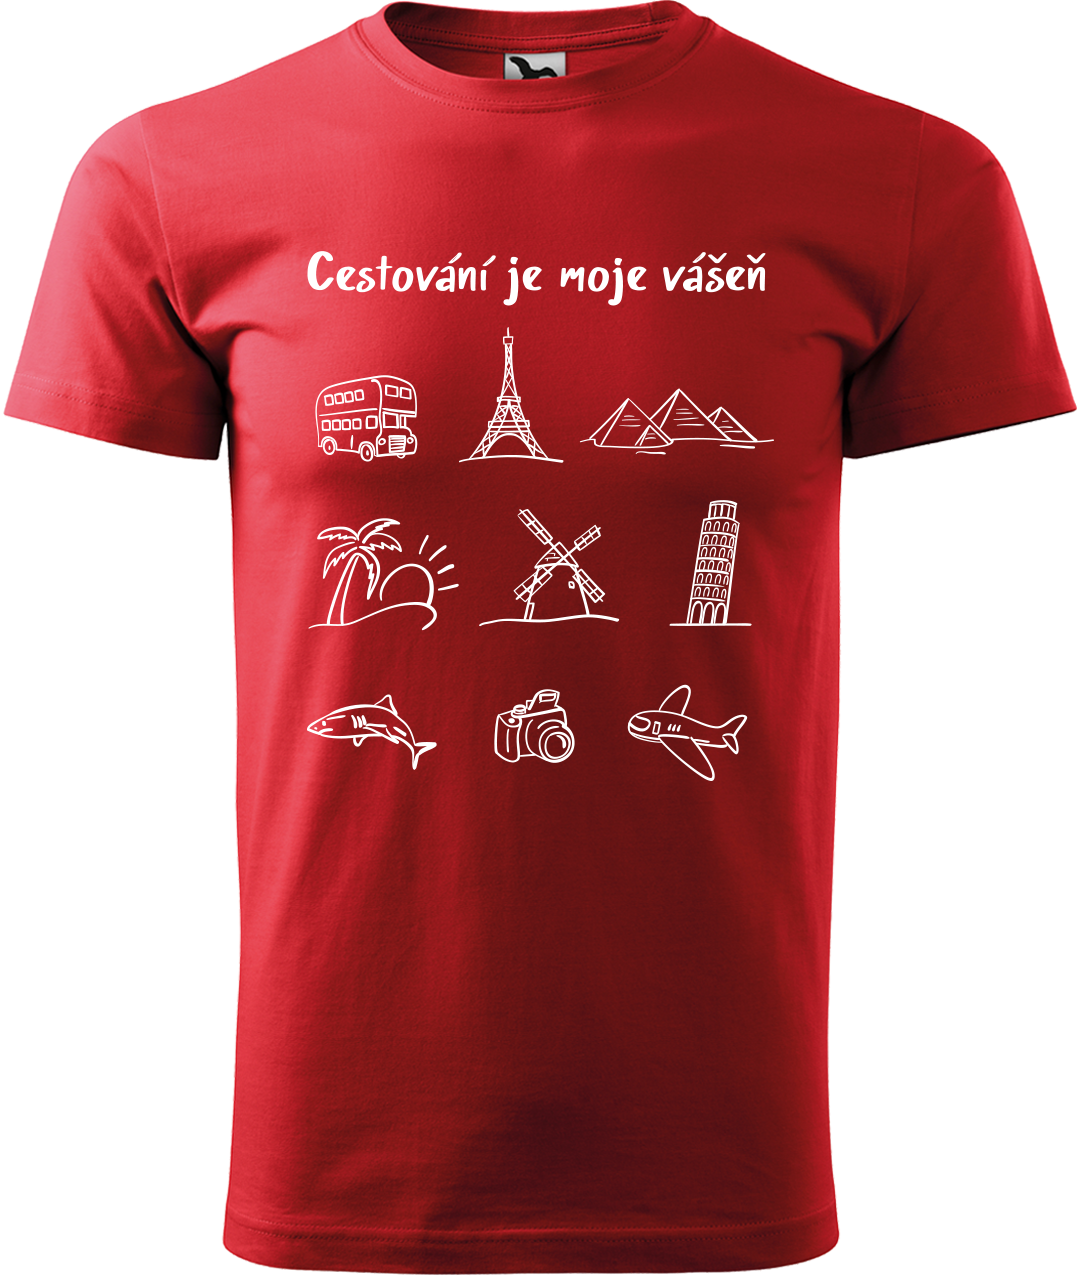 Pánské cestovatelské tričko - Cestování je moje vášeň Velikost: M, Barva: Červená (07)